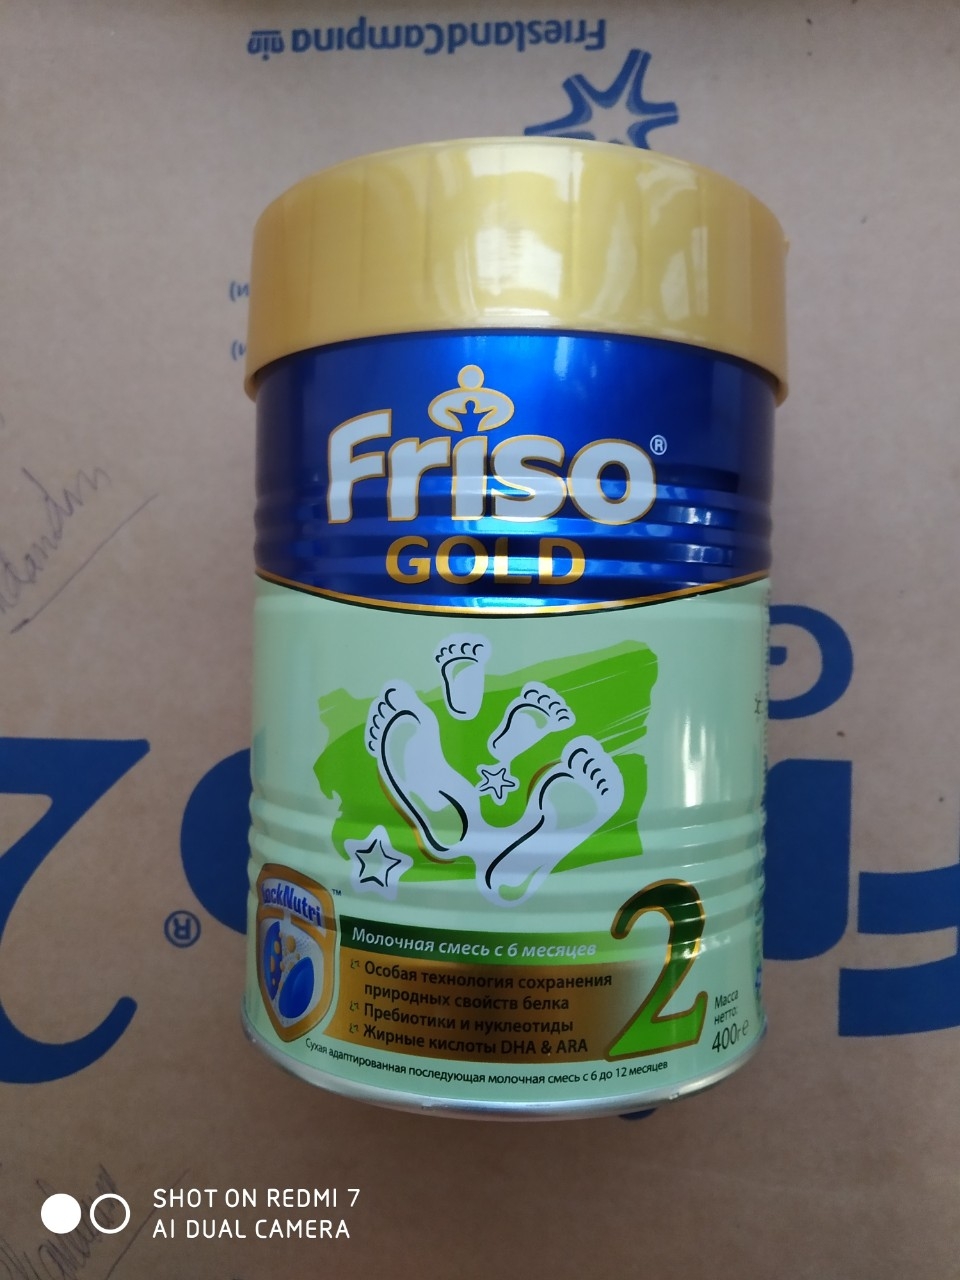 SPDD công thức sữa Frisolac gold 2 400g (Lon)